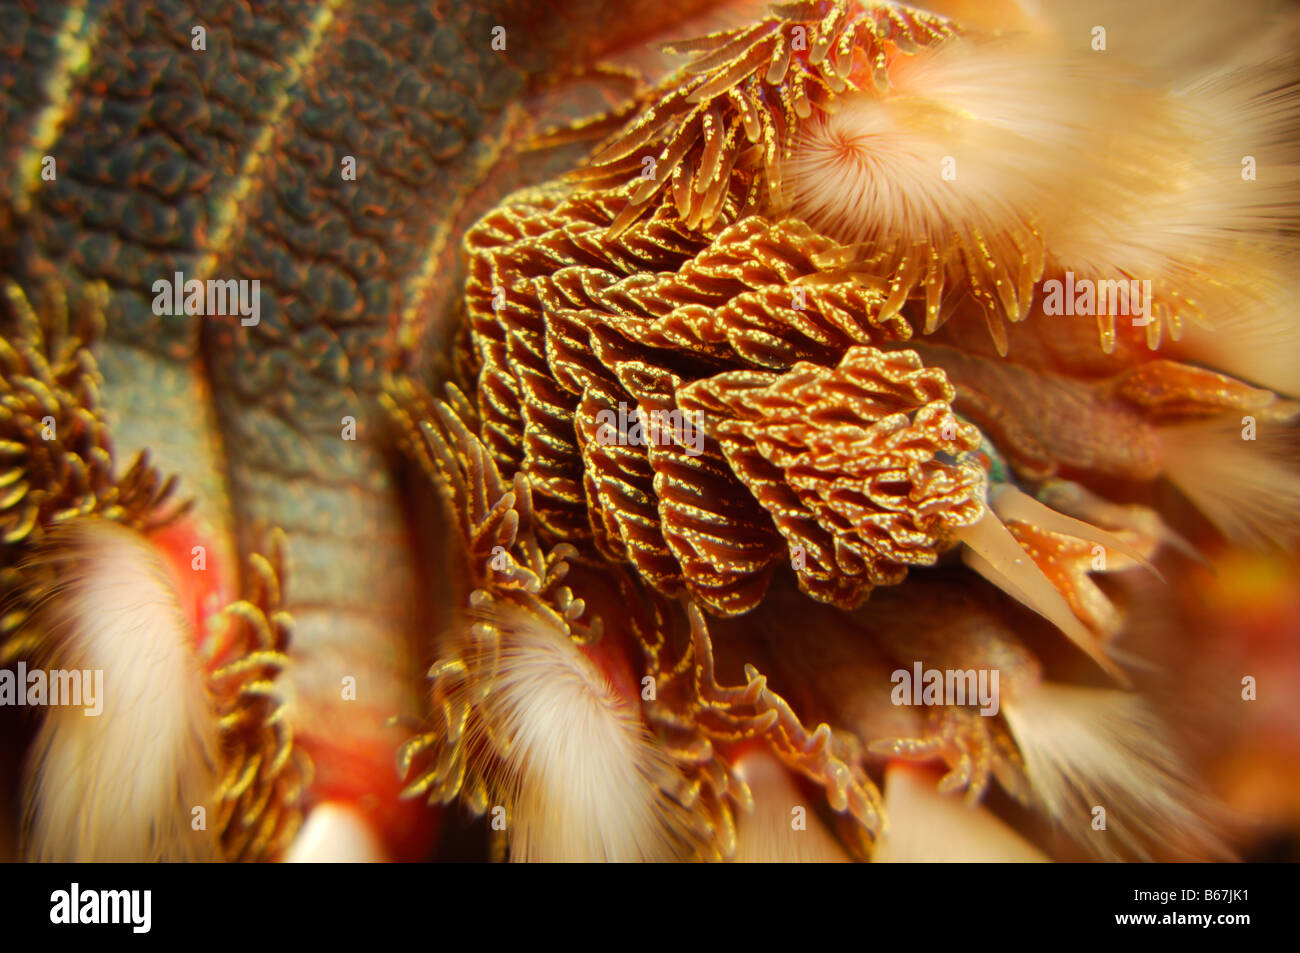 Fire Worm Hermodice carunculata Vis Island Adriatic Sea Croatia Stock Photo